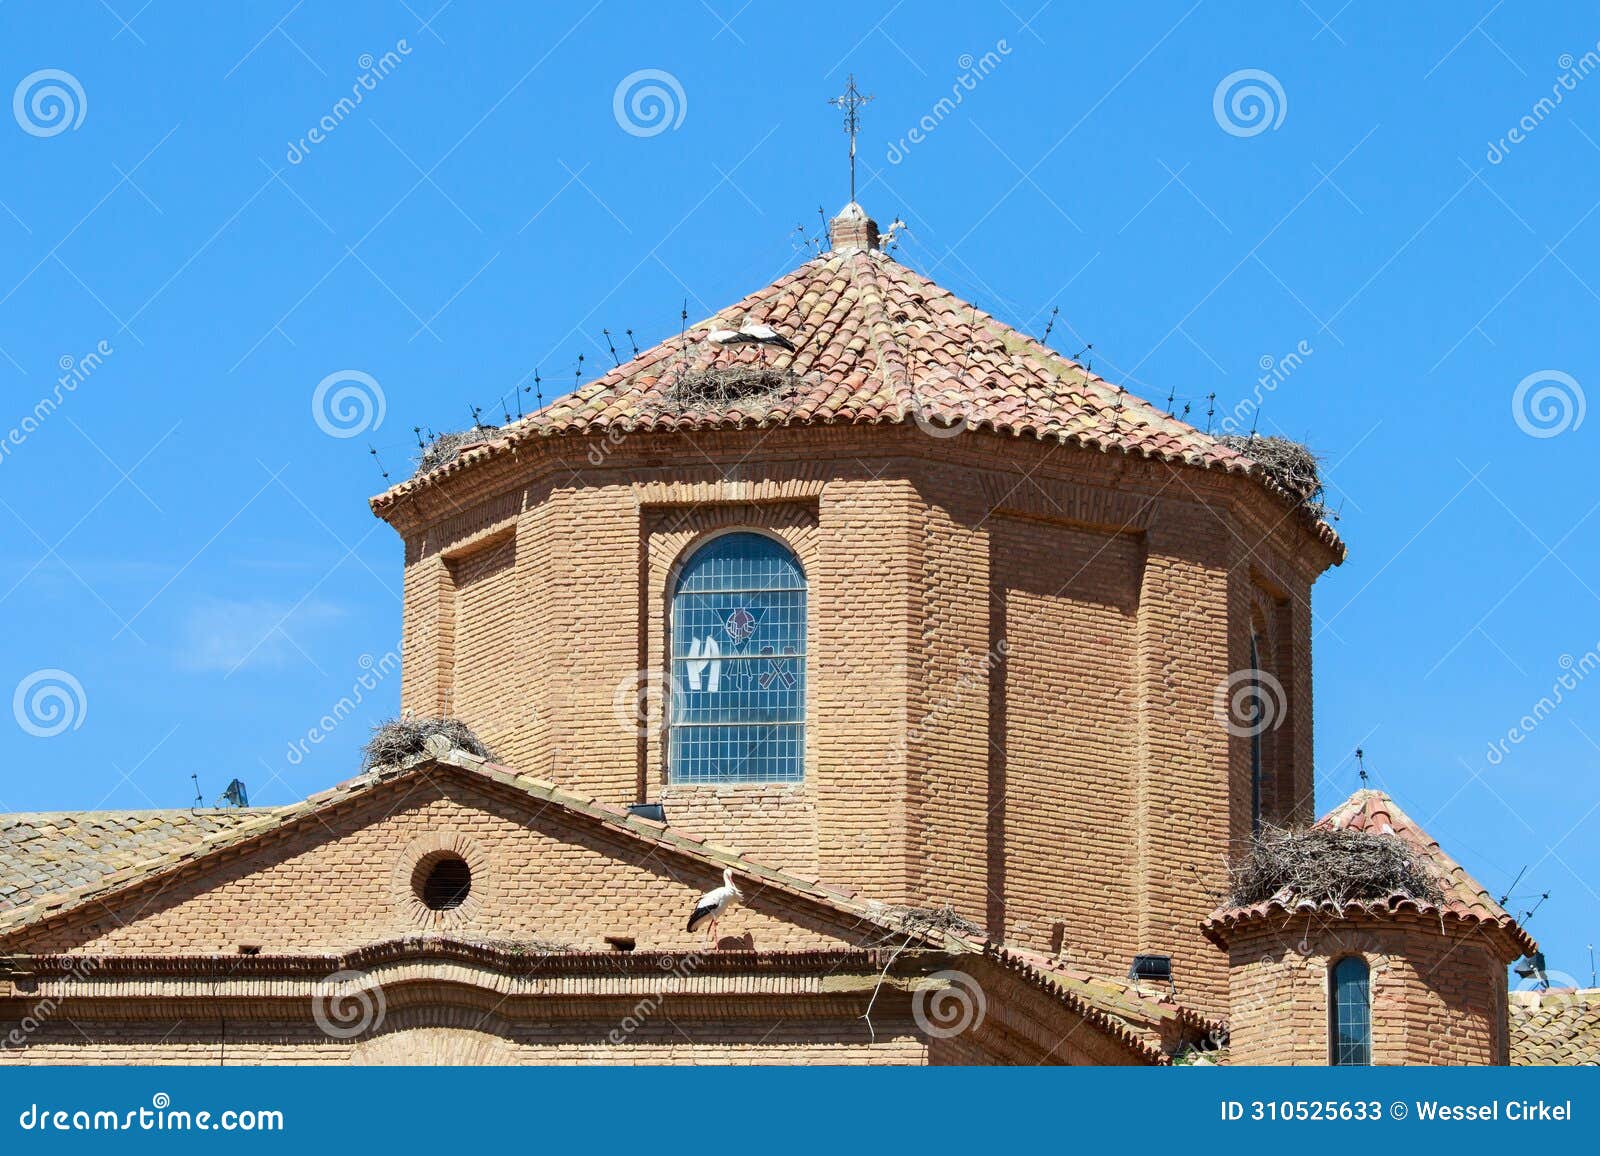 iglesia de san juan bautista in spanish alcolea de cinca